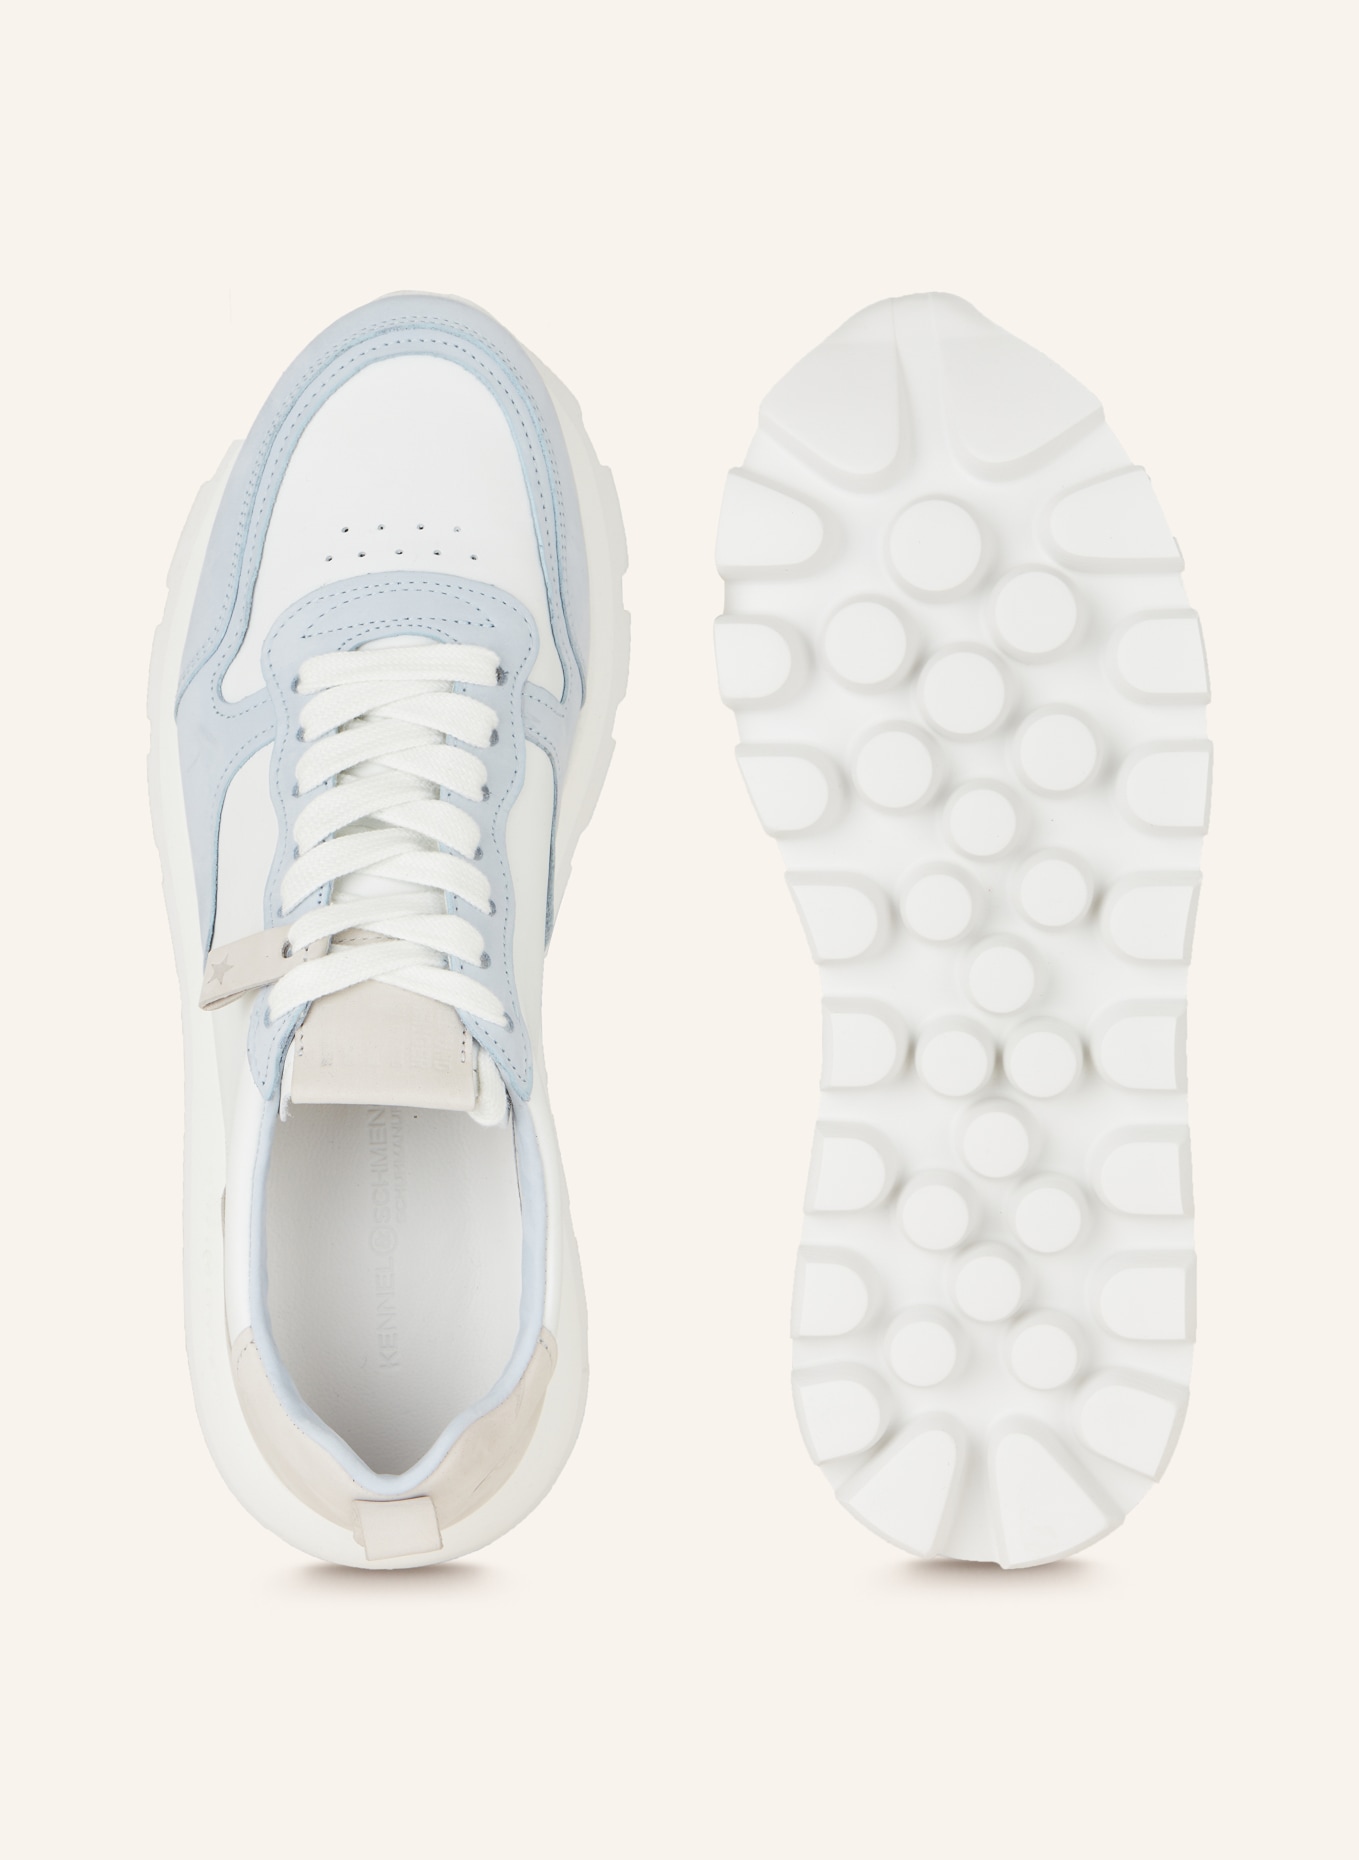 KENNEL & SCHMENGER Sneakers BULL, Color: WHITE/ LIGHT BLUE/ LIGHT GRAY (Image 5)